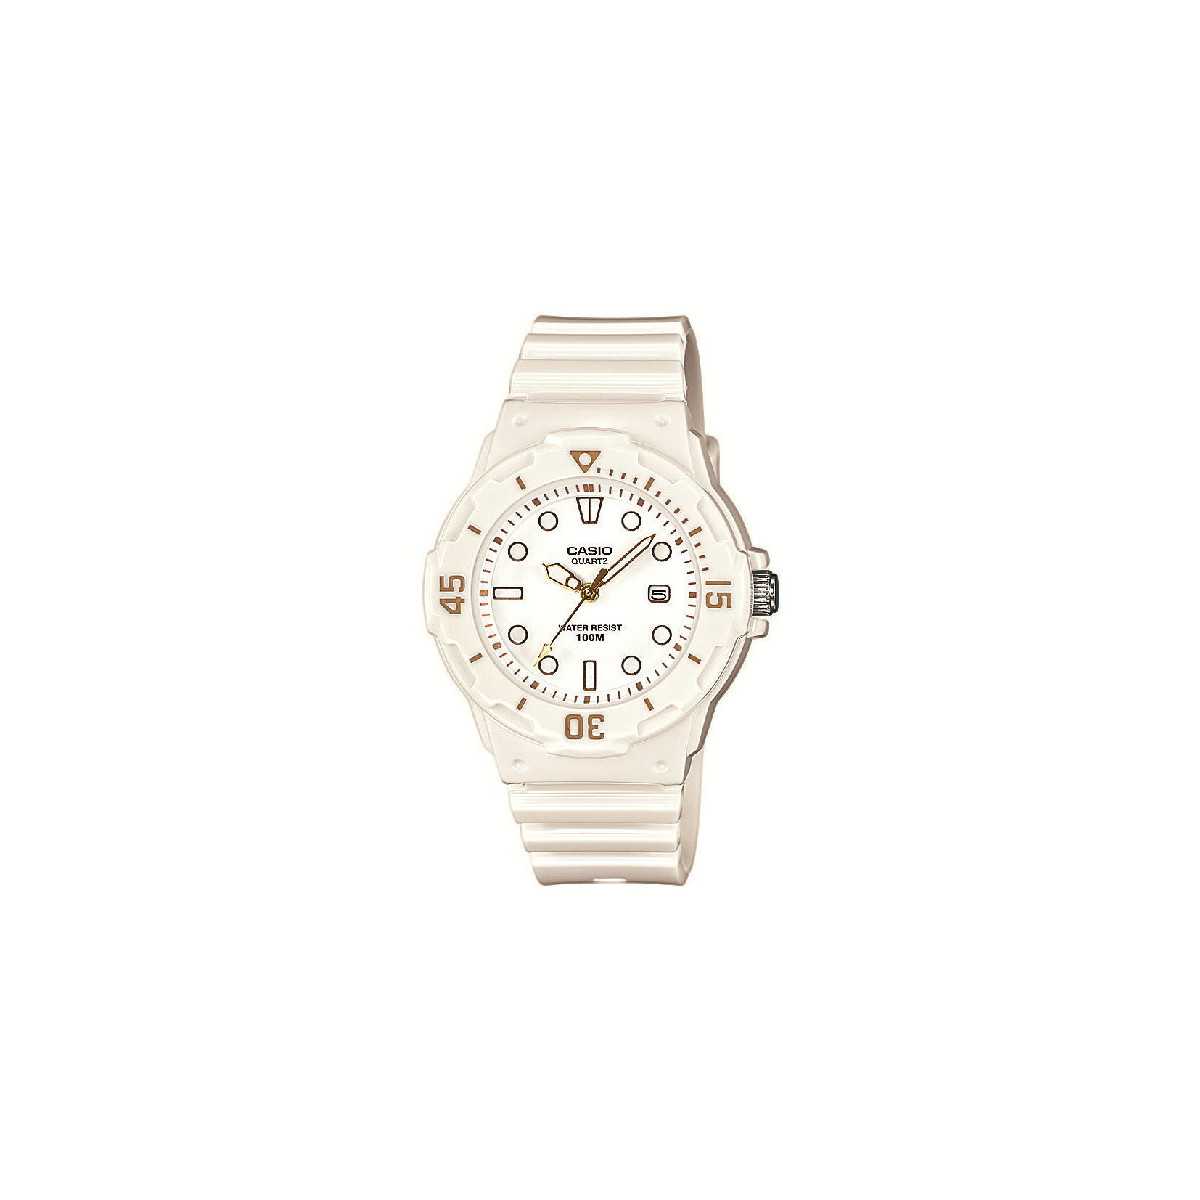 Reloj Casio Collection Blanco LRW-200H-7E2VEF